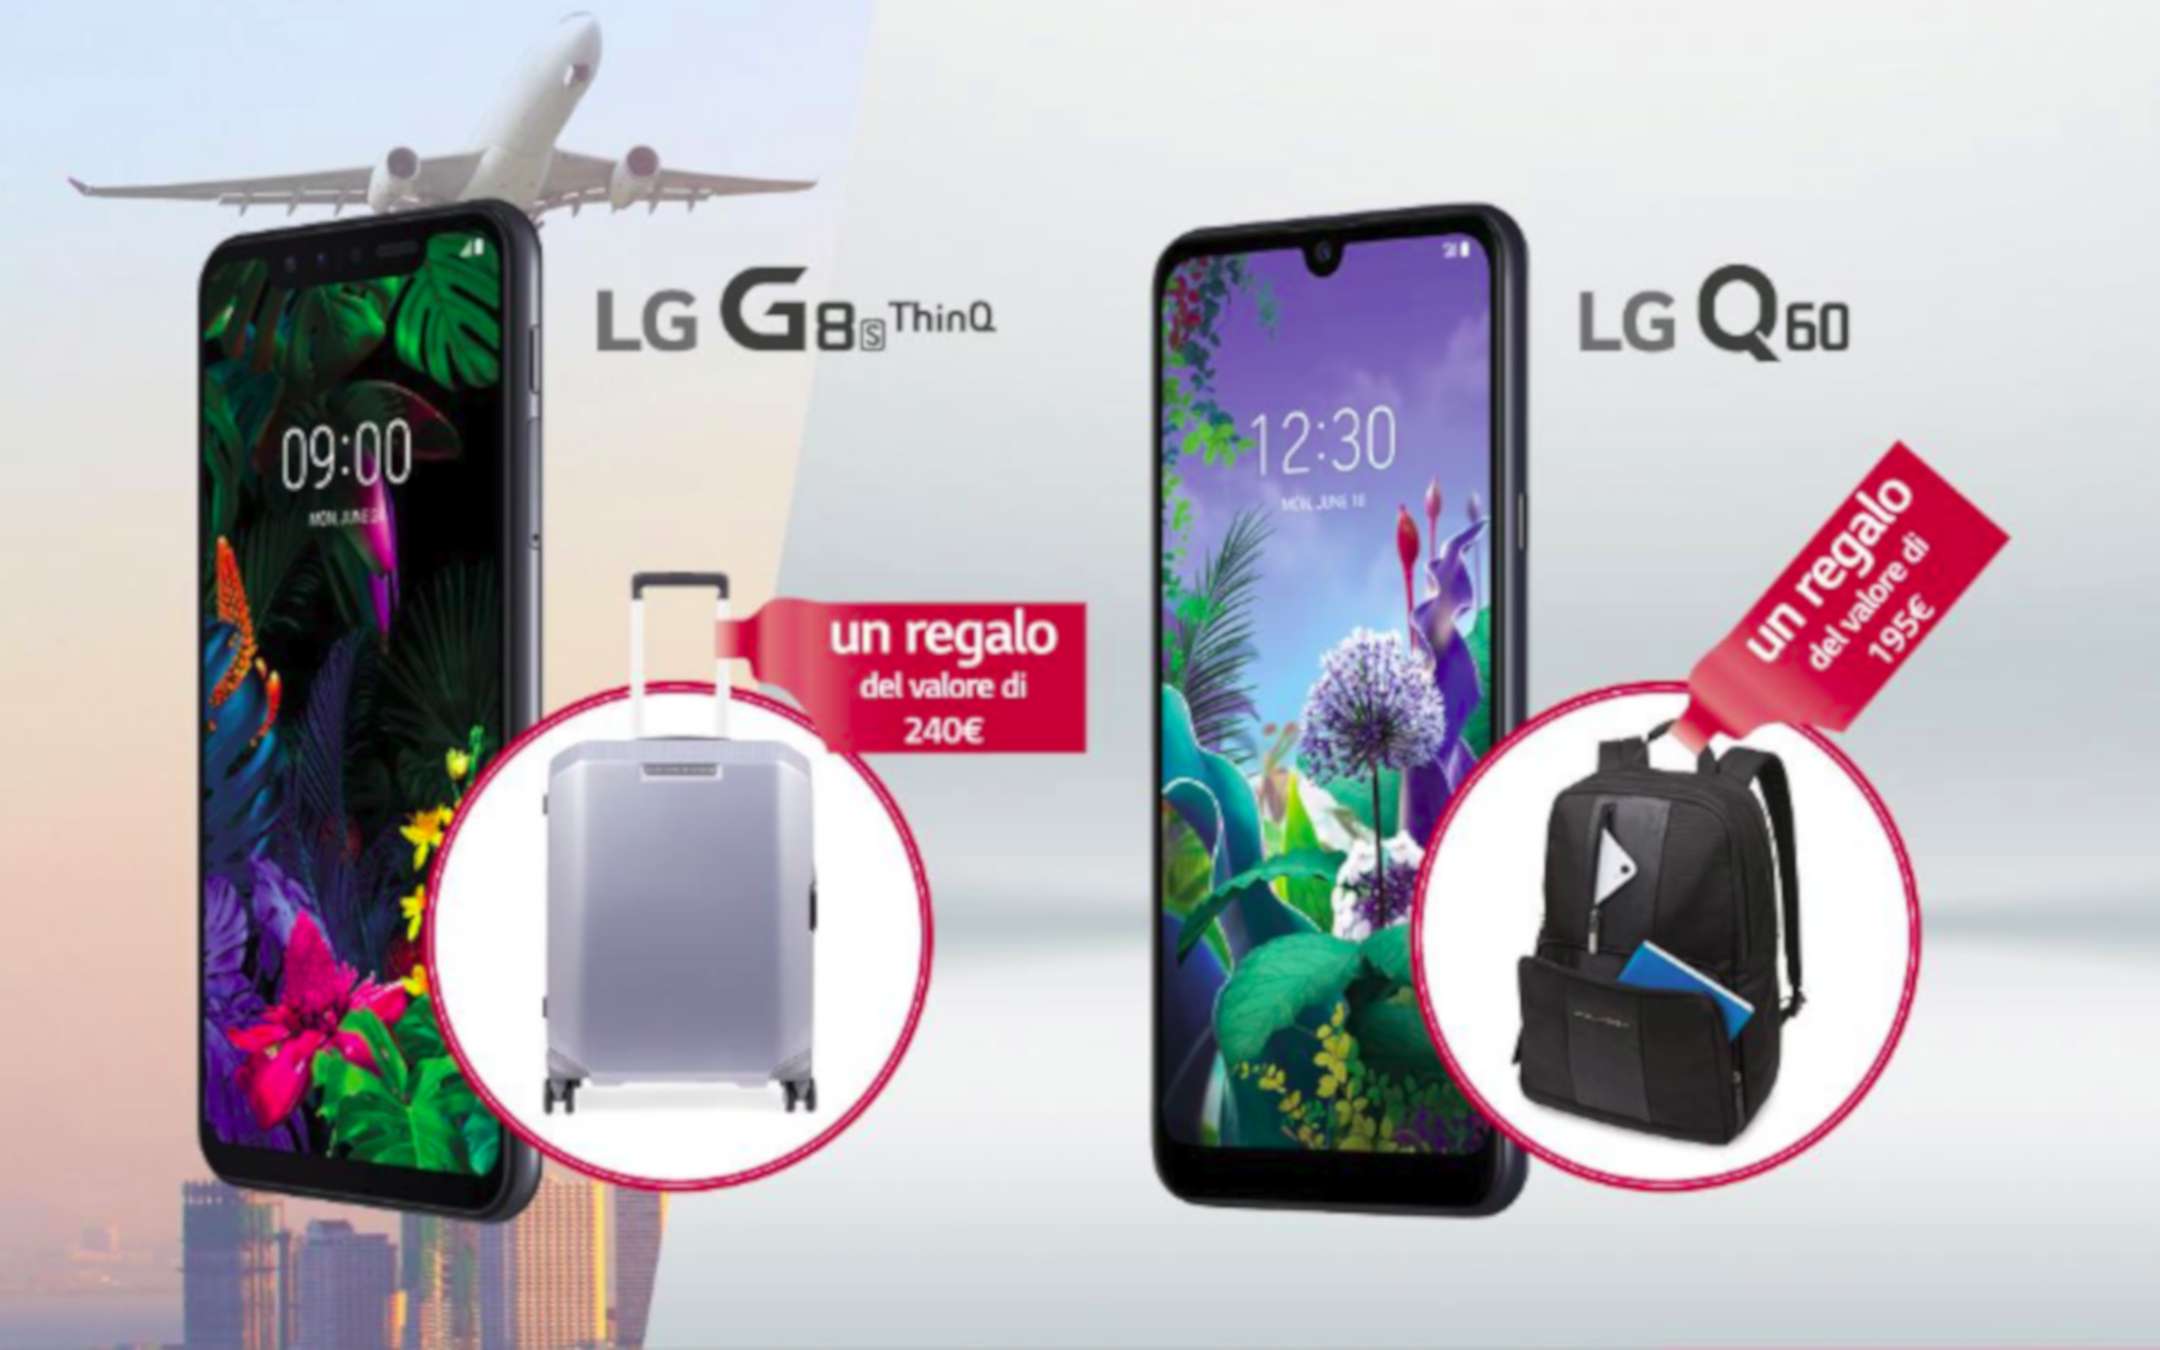 LG G8s ThinQ e Q60: prodotti Piquadro in regalo